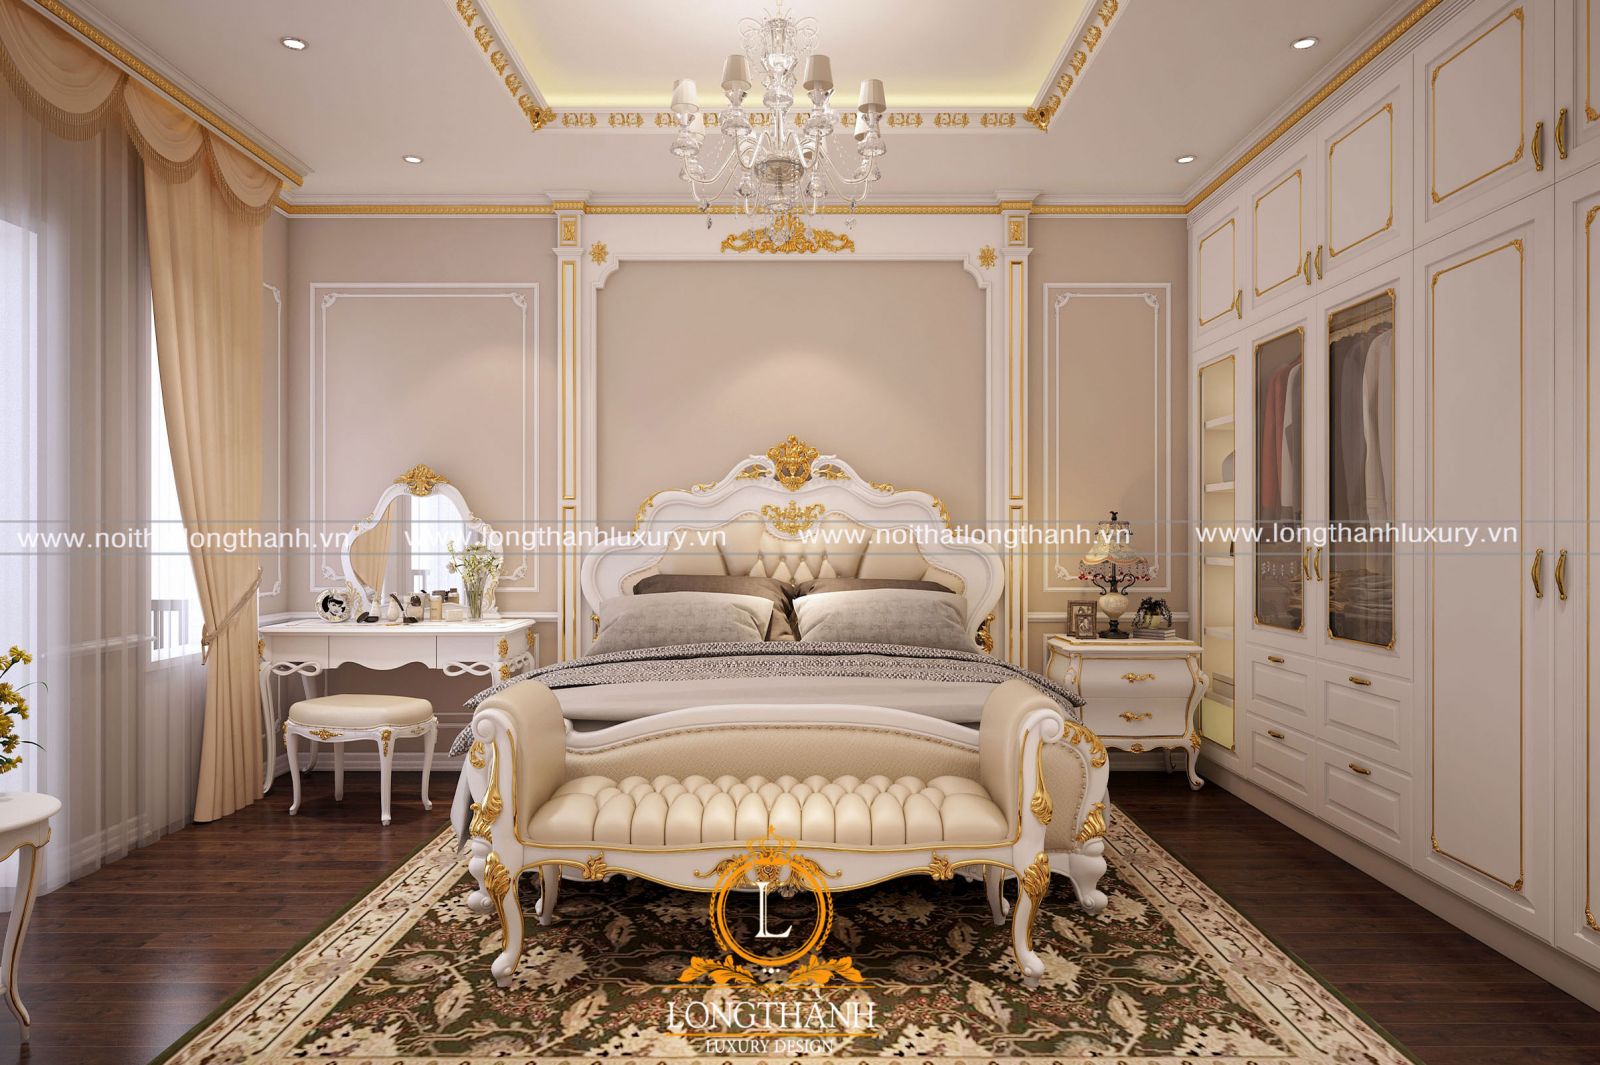 Mẫu phòng ngủ sơn trắng dát vàng tân cổ điển sang trọng